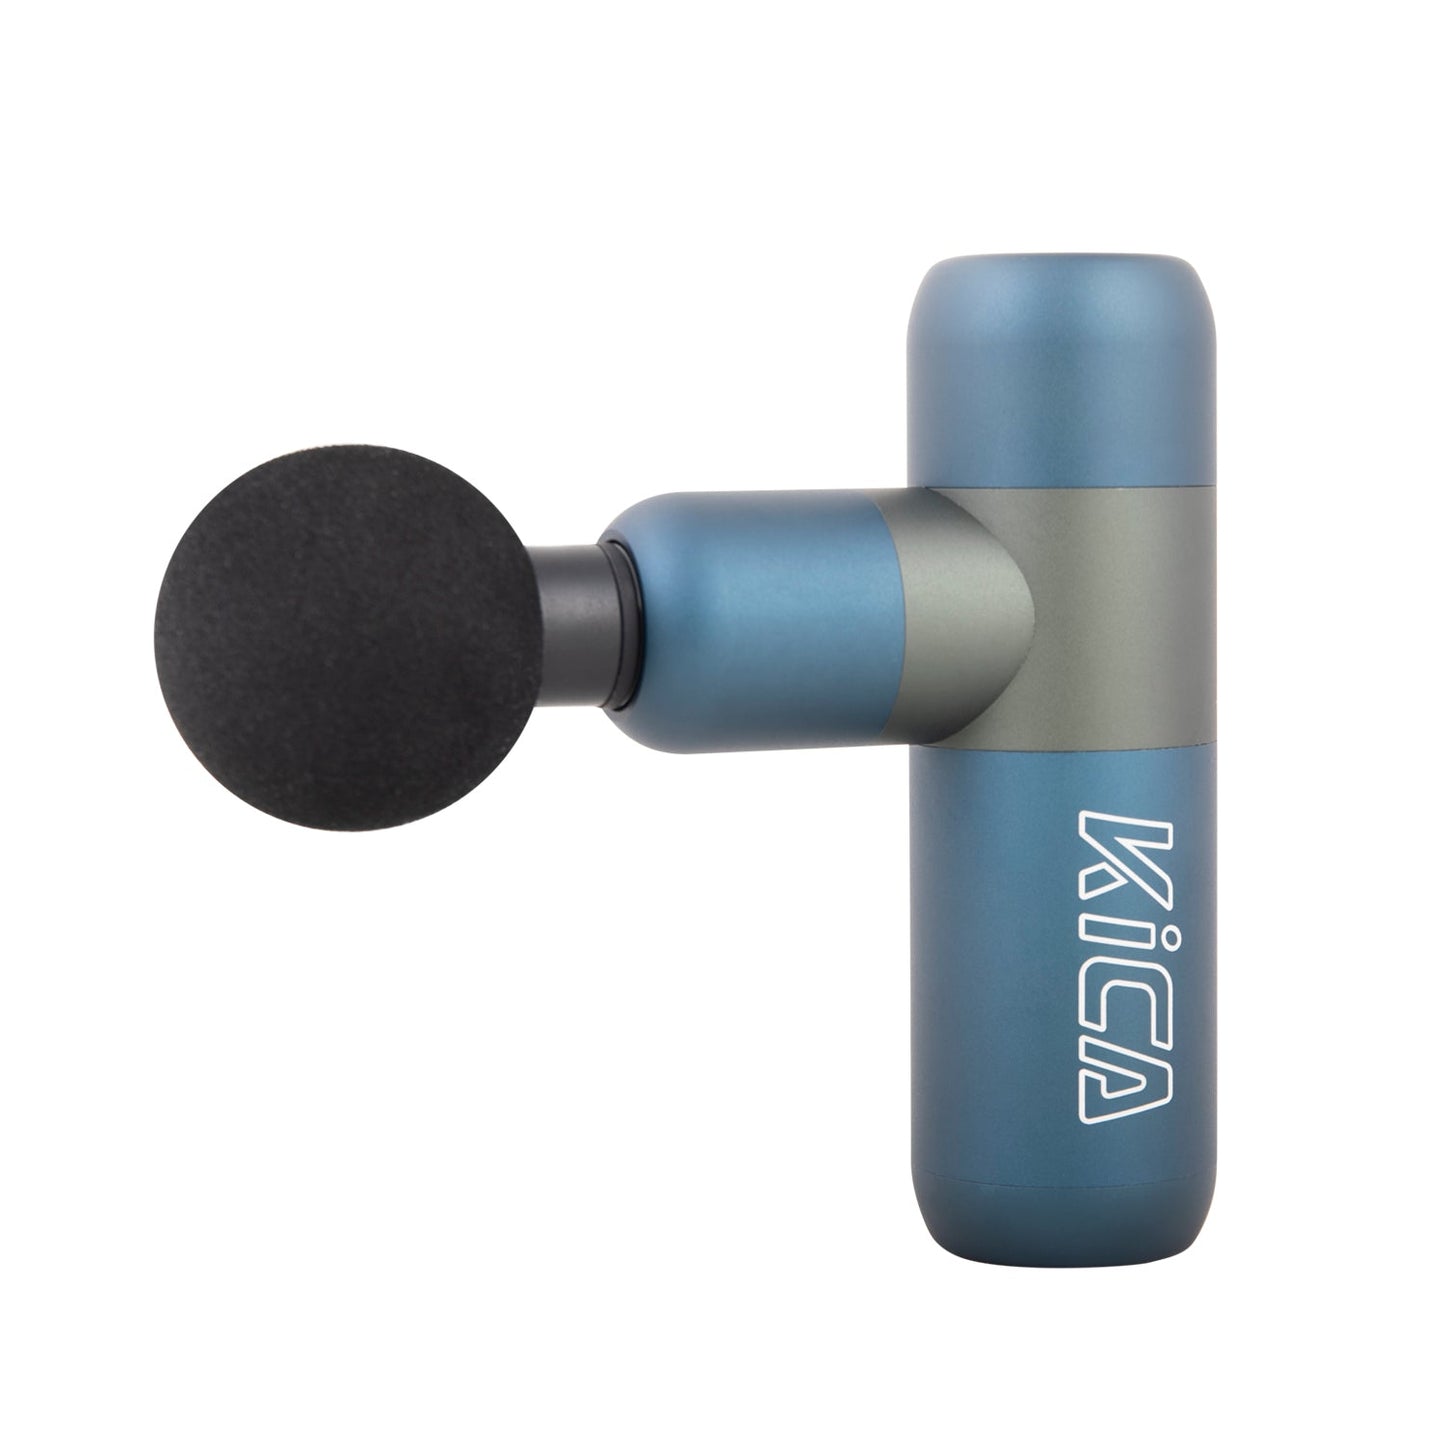 FeiyuTech Kica K2 Deep Tissue Percussive Massage Gun (Blue)